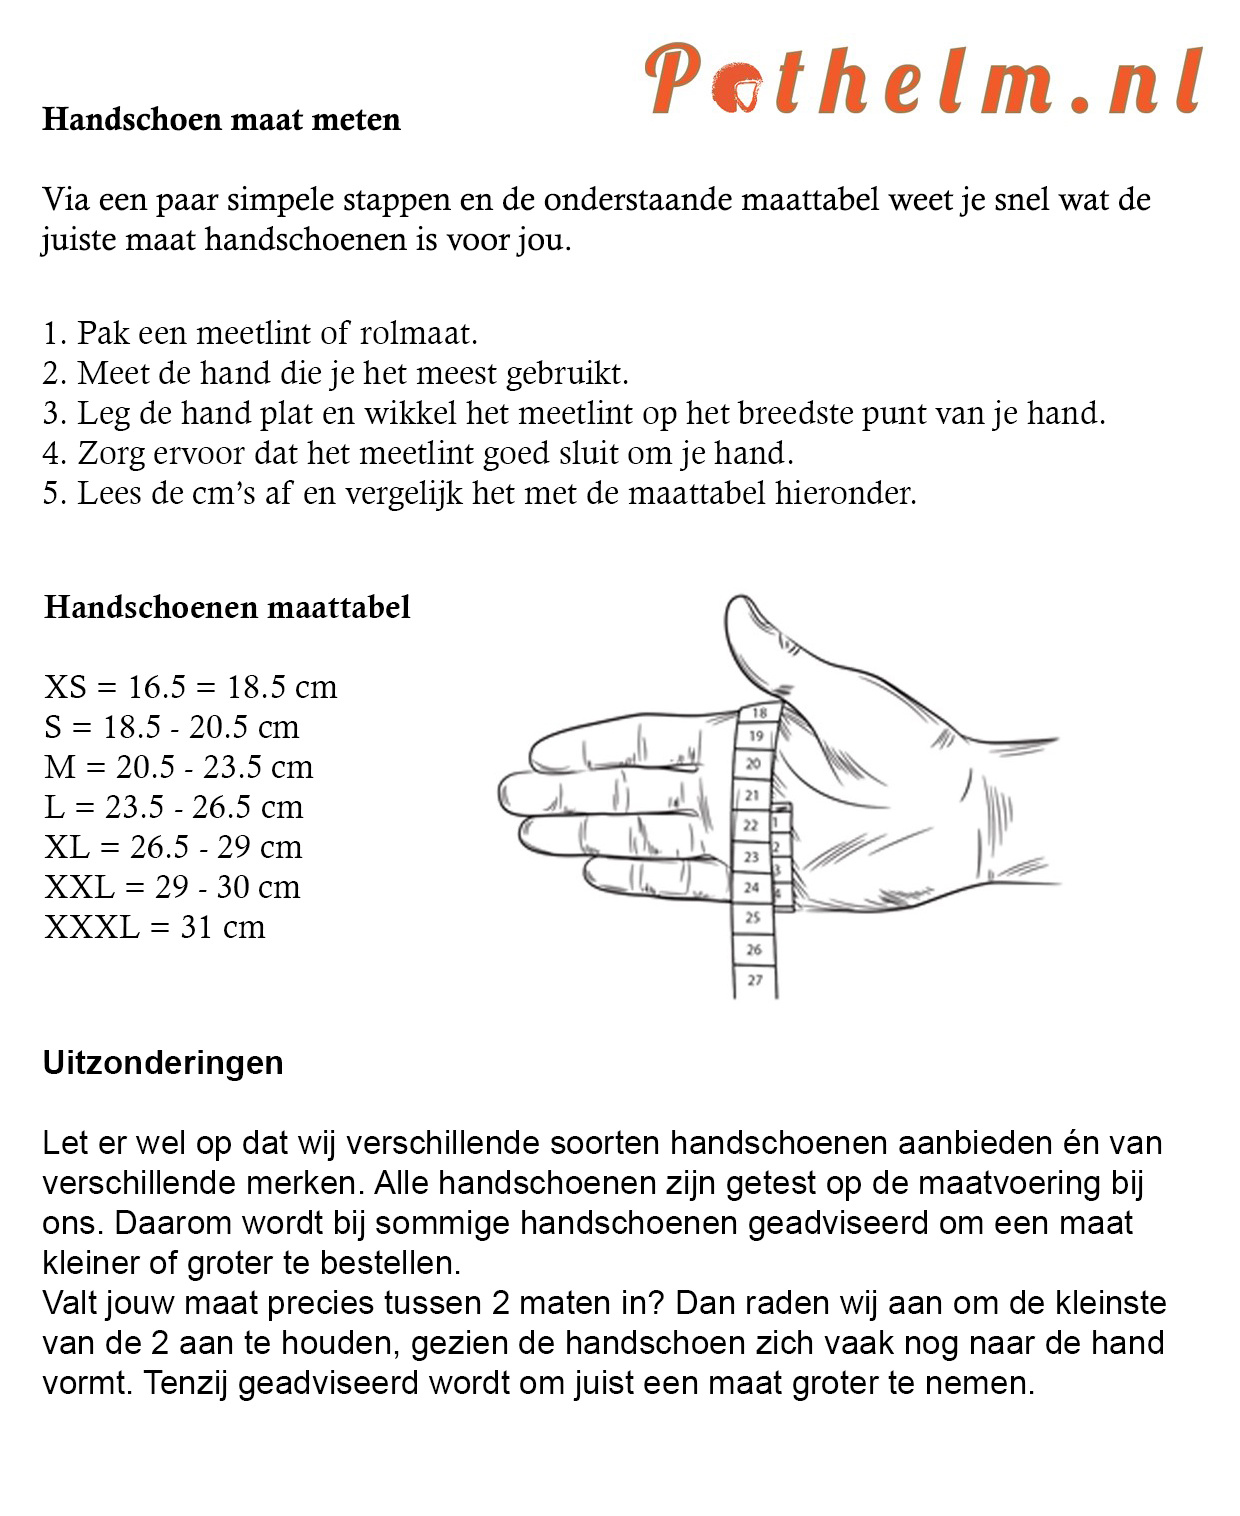 klep shuttle Verlaten tabu handschoenen | zwart | Pothelm.nl